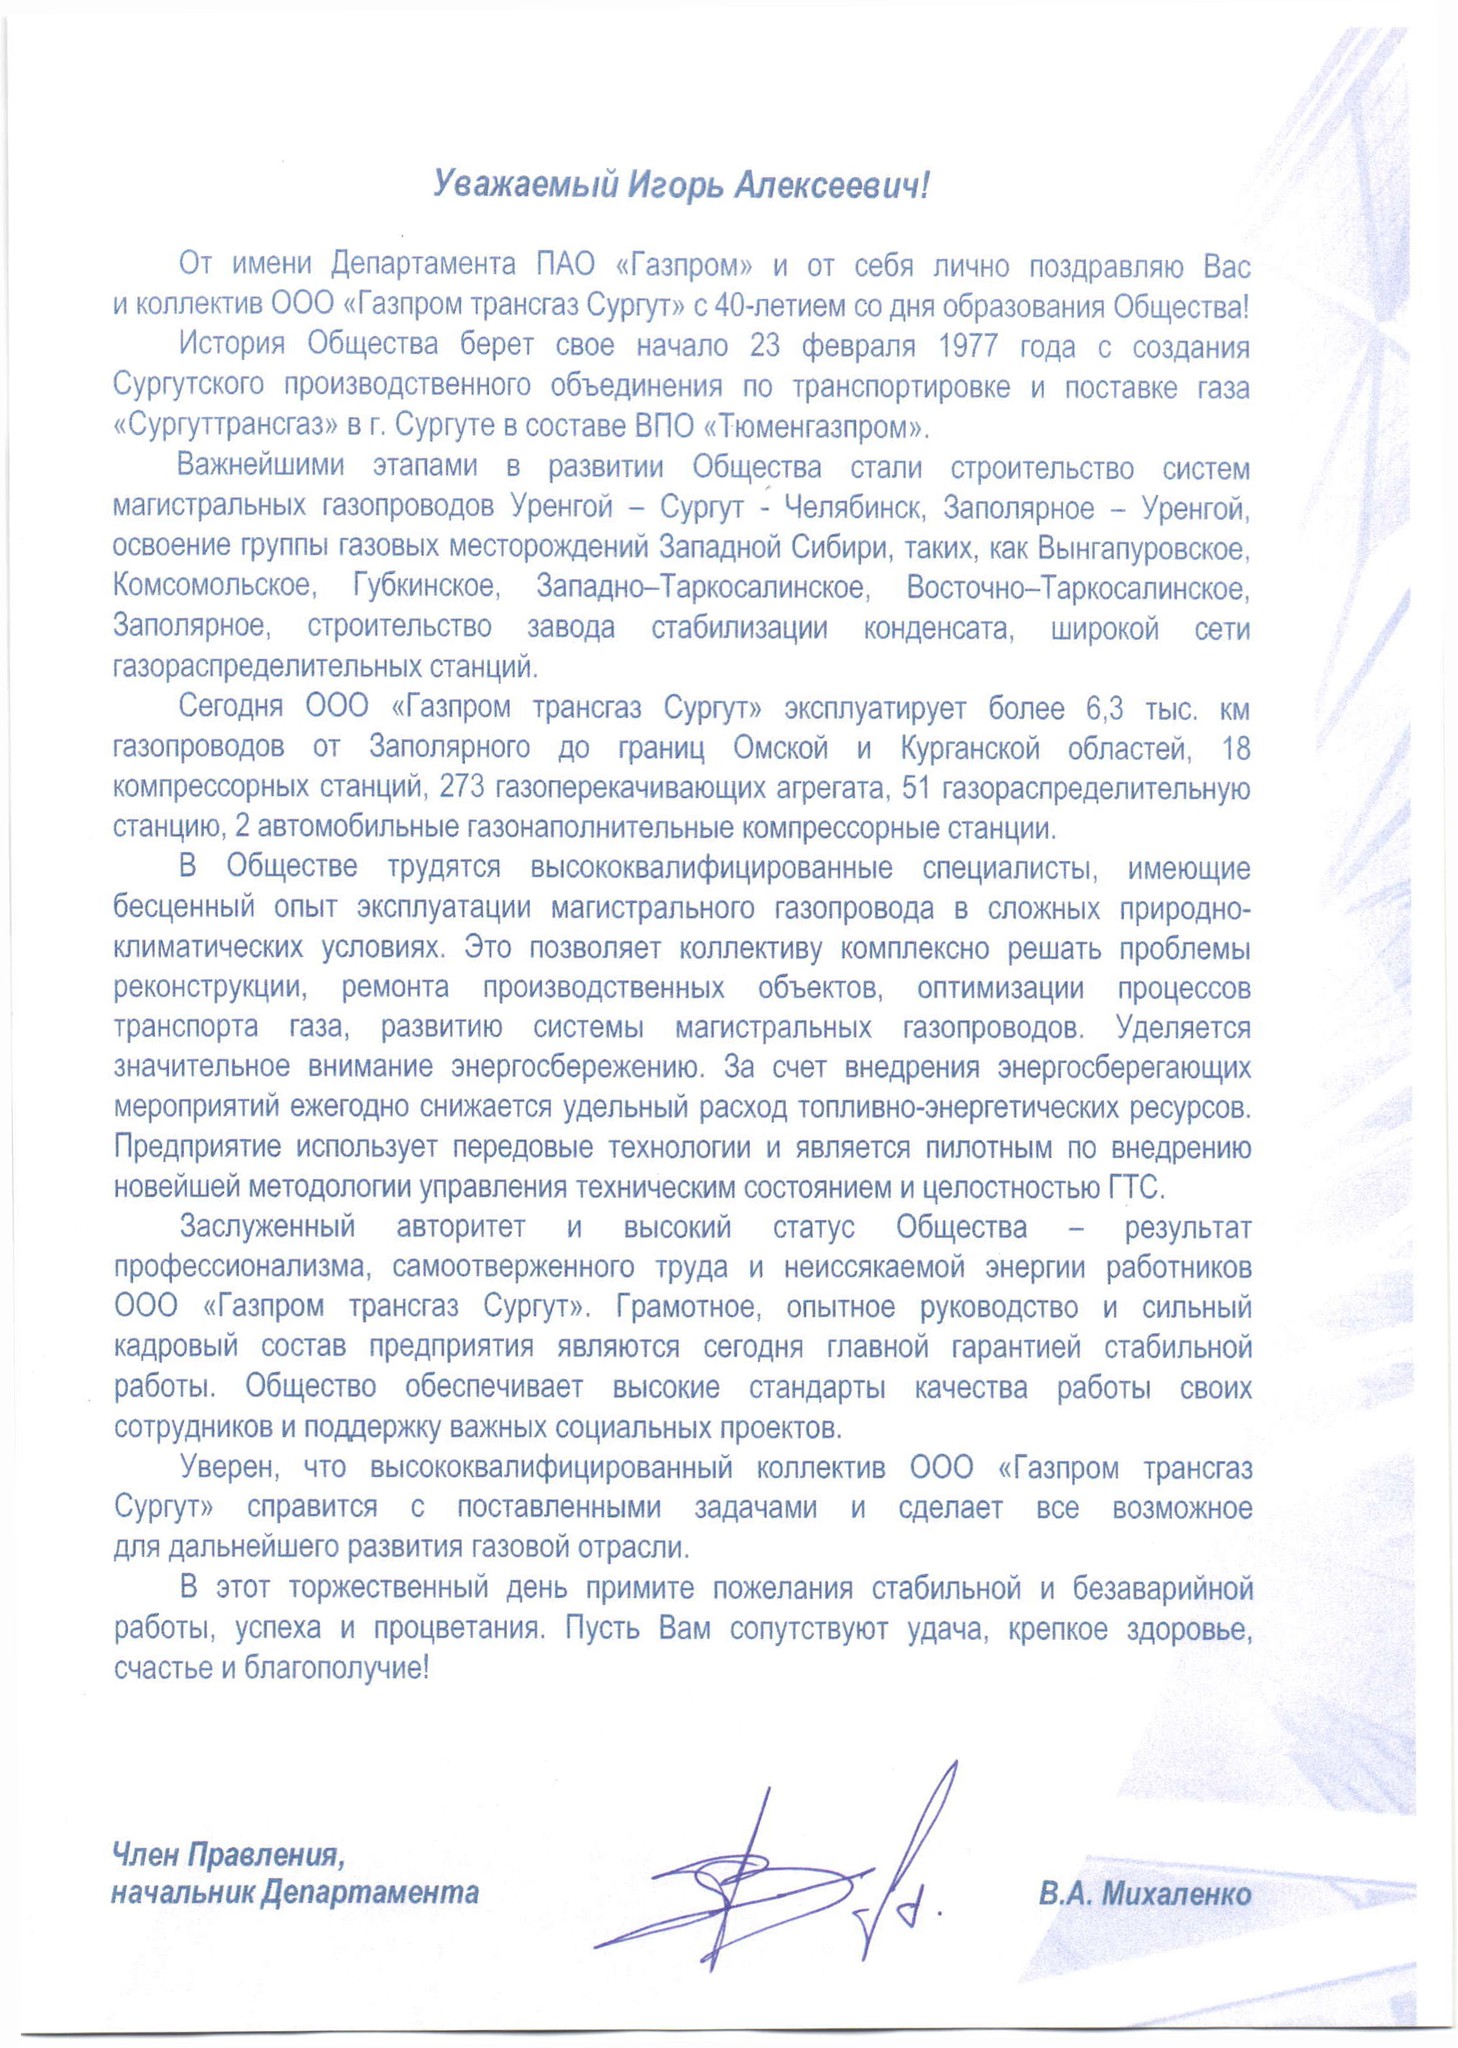 Поздравление члена Правления ПАО «Газпром», начальника Департамента В.А. Михаленко